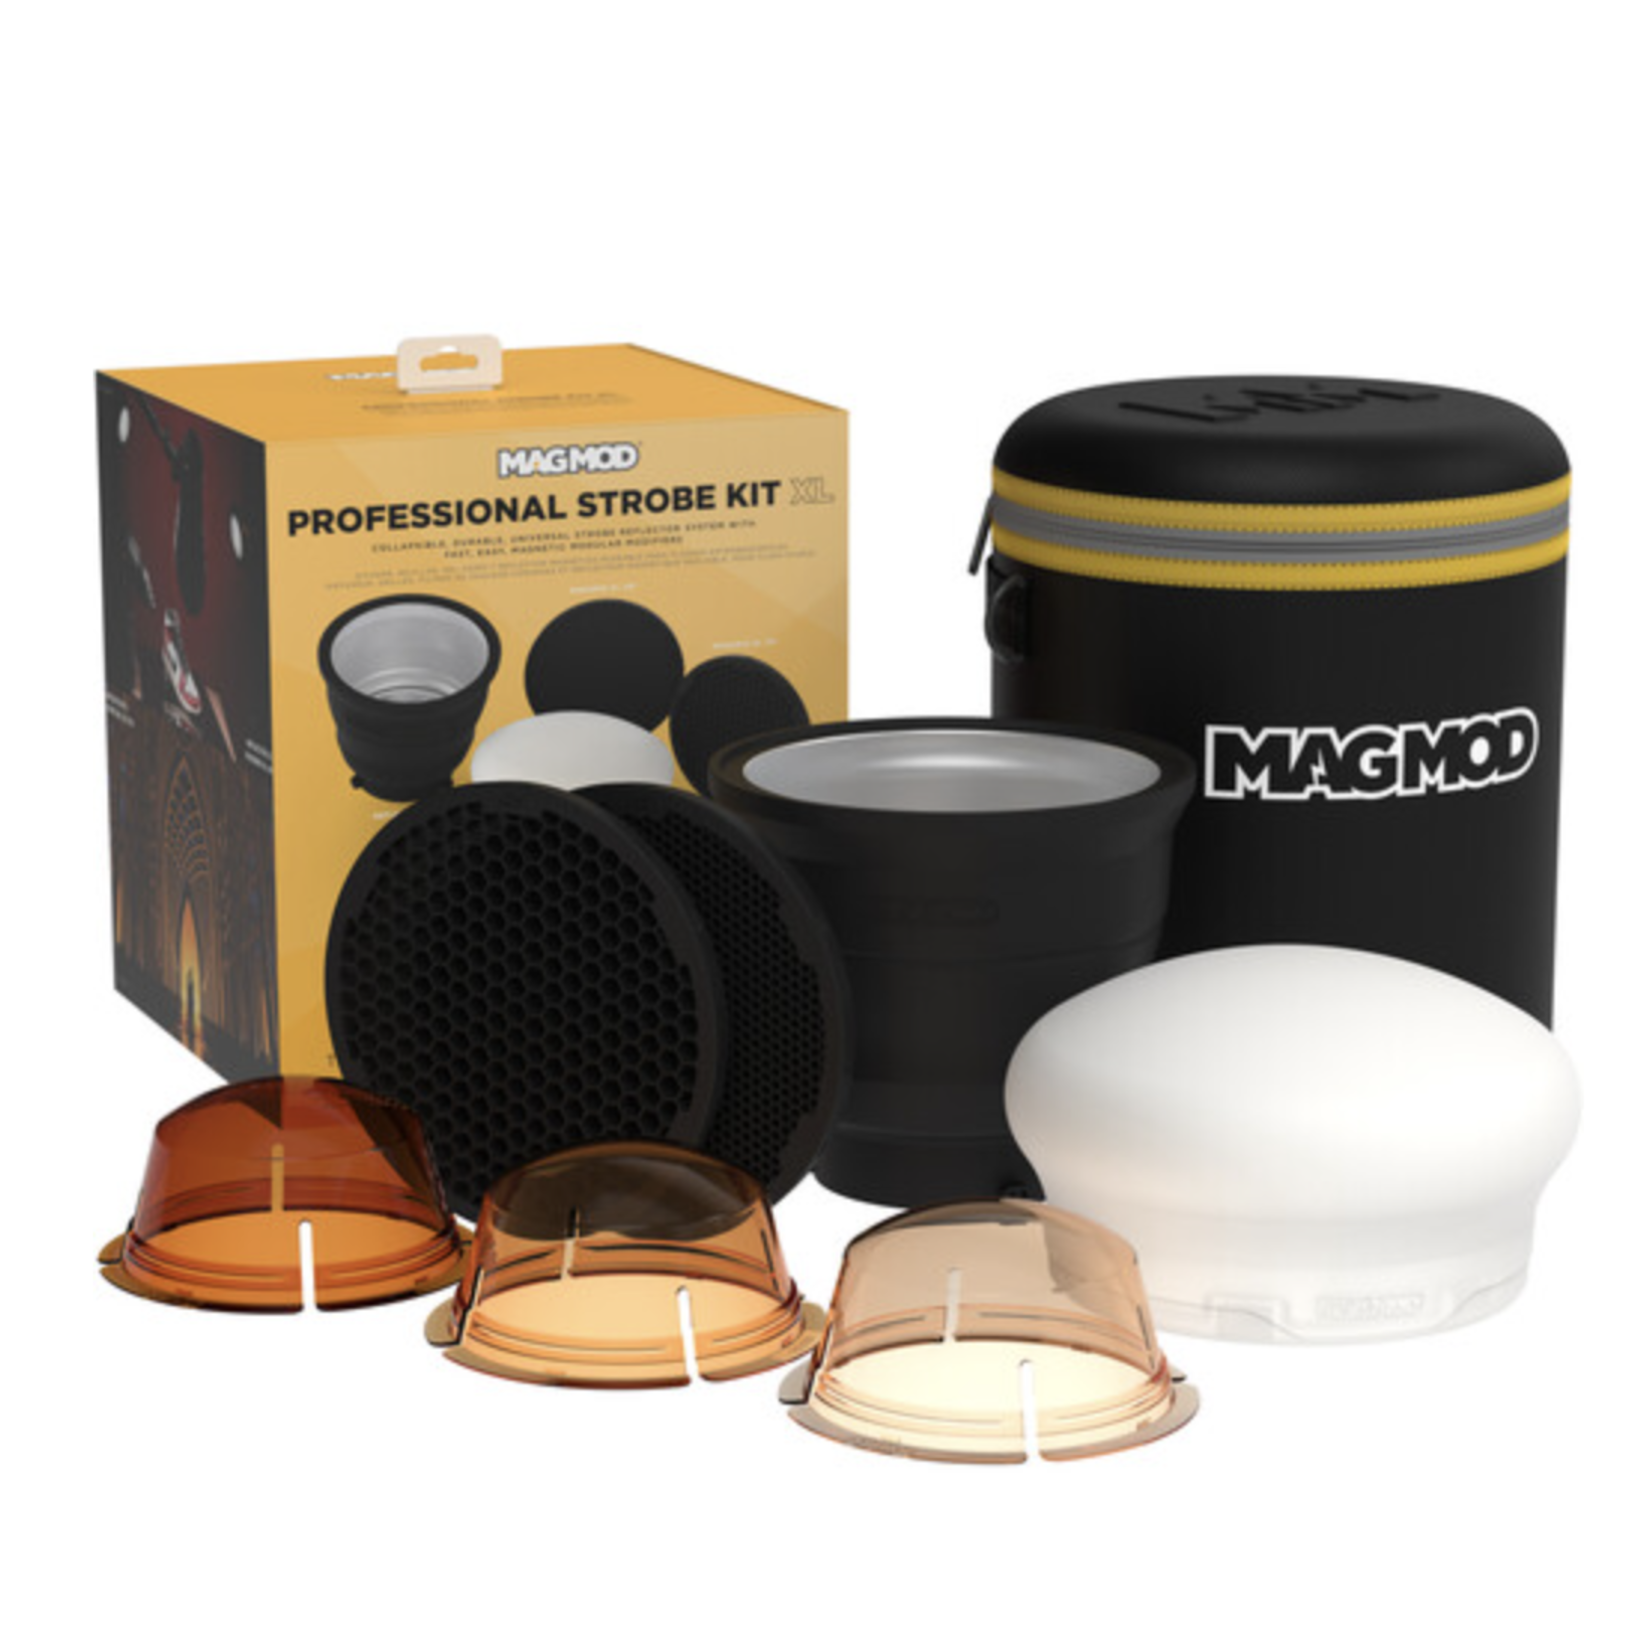 MagMod MagMod XL Professional Kit